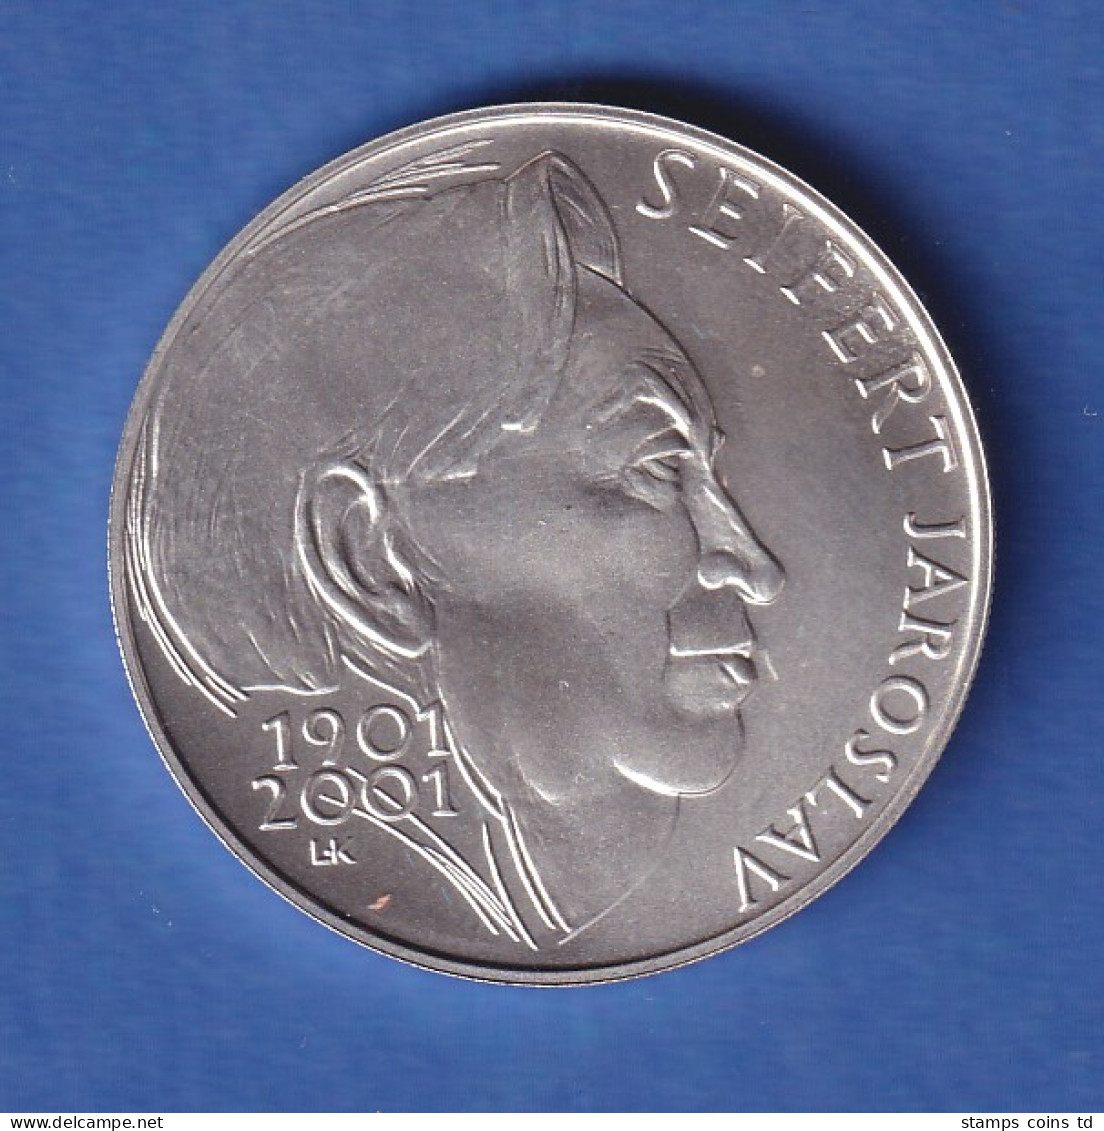 Tschechien 2001 Silbermünze 200 Kronen 100. Geburtstag Von Jaroslav Seifert Stg - Tschechische Rep.